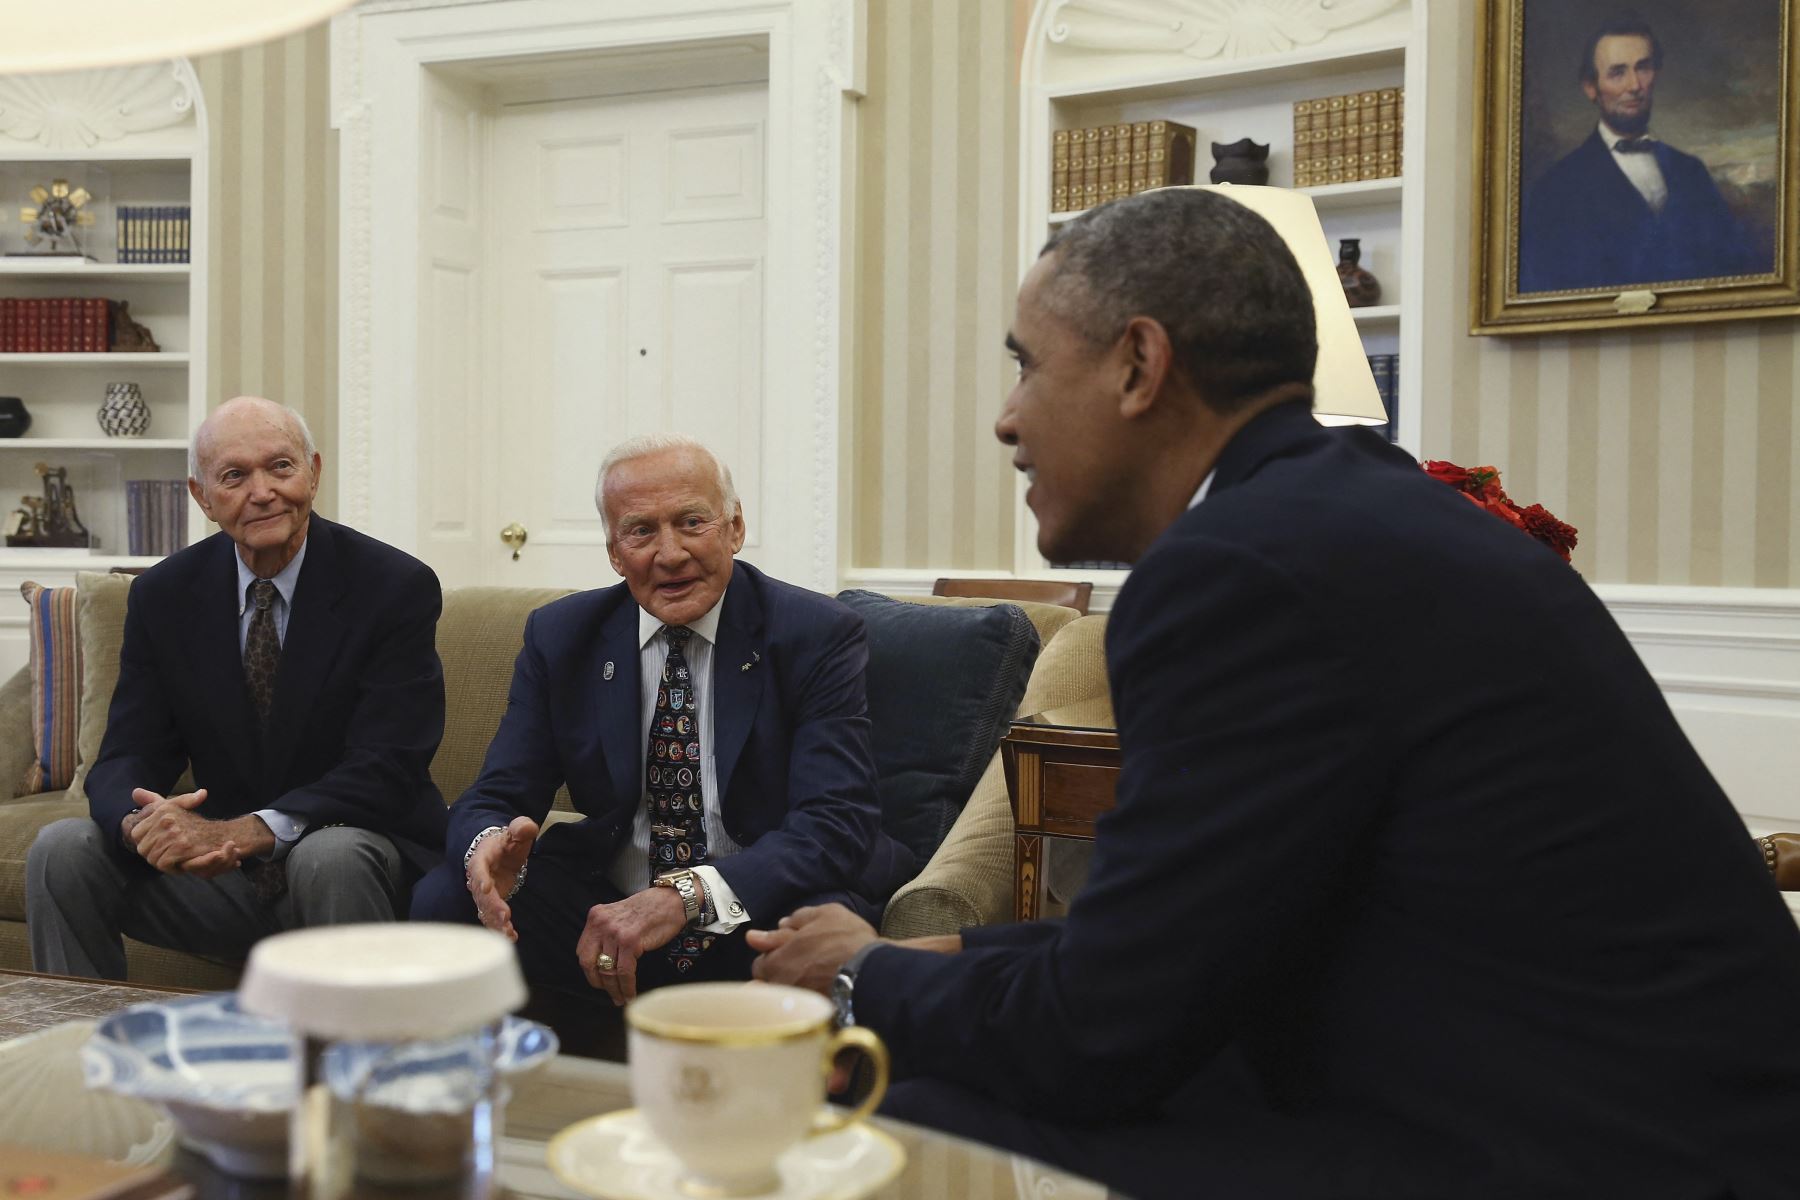 El presidente estadounidense Barack Obama (R) se reúne con los miembros supervivientes del Apolo 11, los astronautas Michael Collins (L) y Buzz Aldrin (C) durante una visita a la Oficina Oval de la Casa Blanca, el 22 de julio de 2014 en Washington, DC. El presidente Obama se reunió con los astronautas para honrar el 45 aniversario de su aterrizaje lunar. Foto: AFP